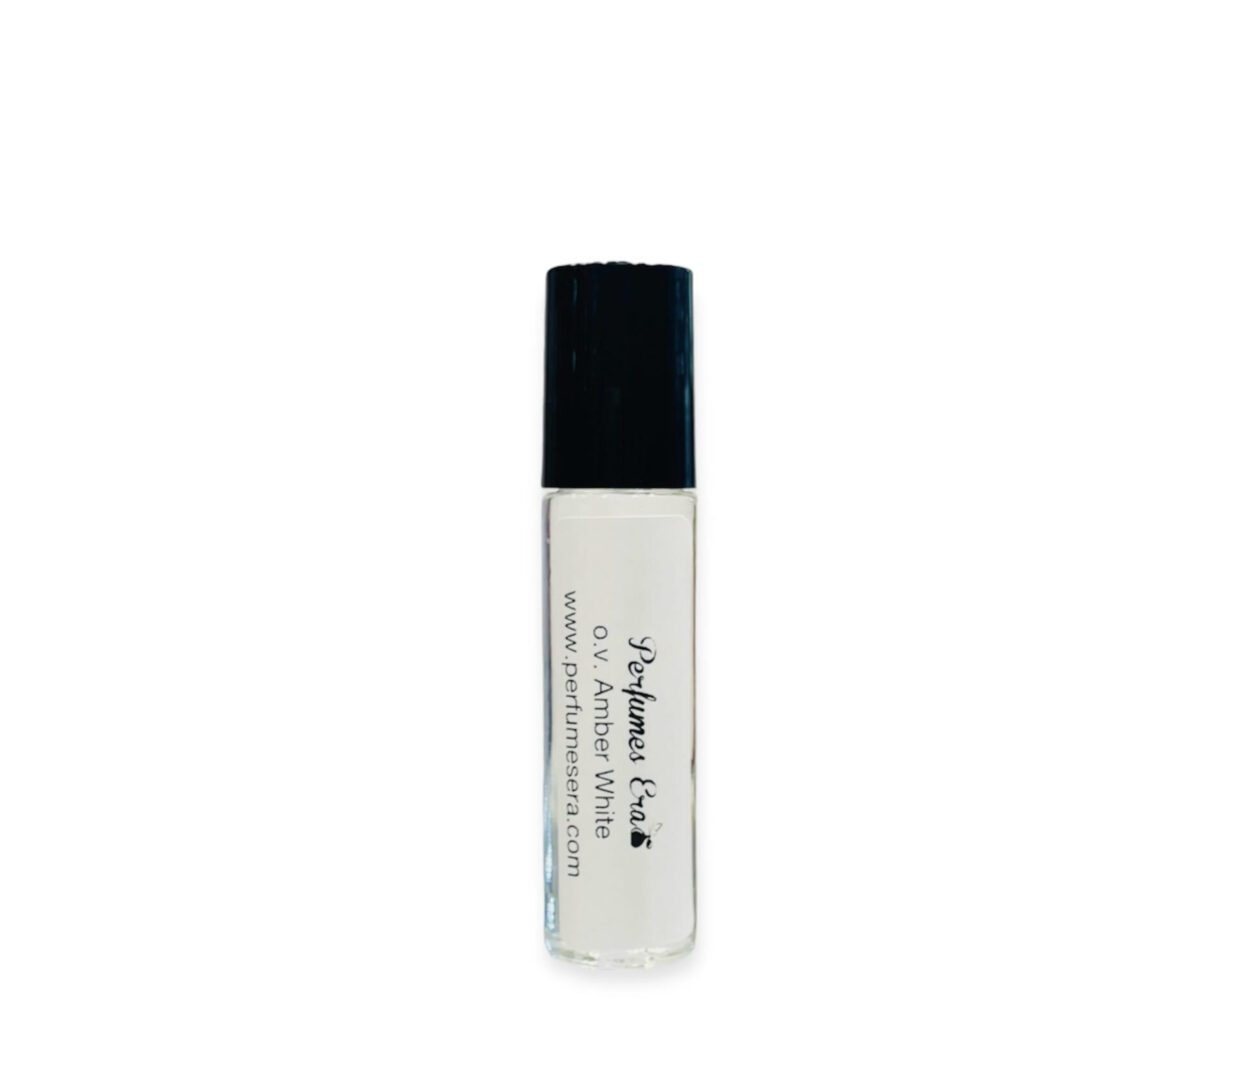 Amber White perfume oil roller bottle.